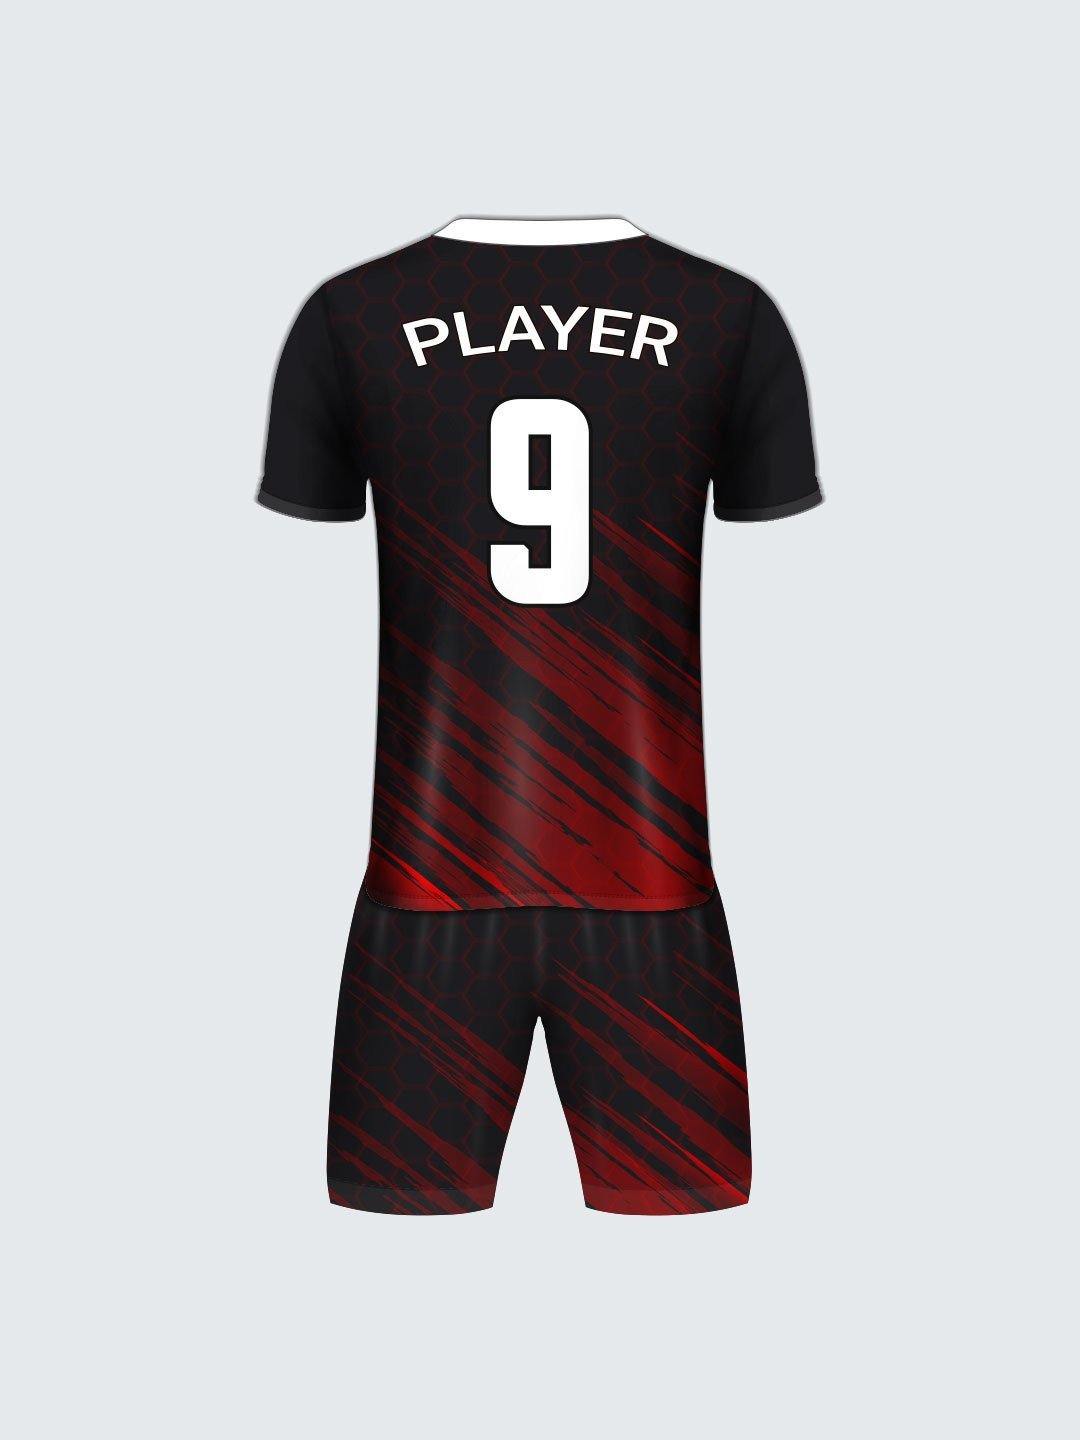 Custom Football Sets - Teamwear - FS1021 - Sportsqvest